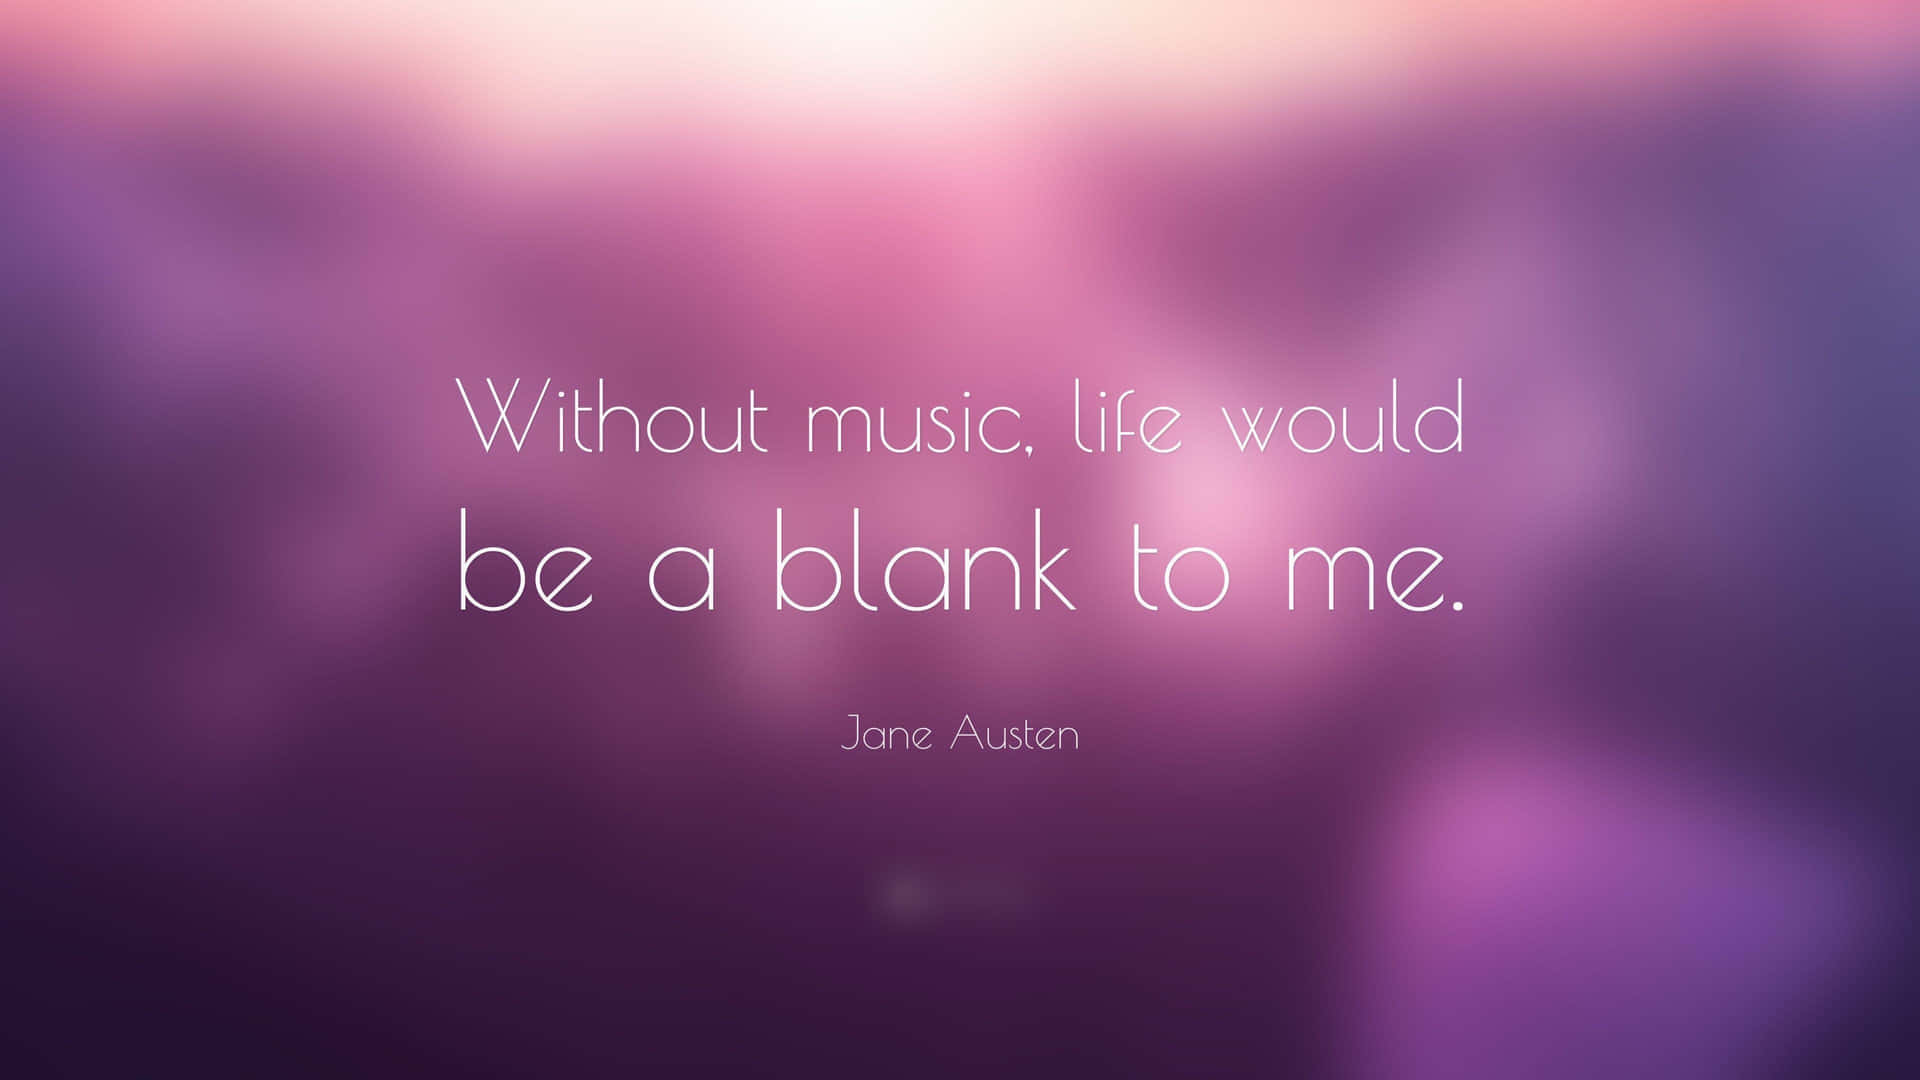 OhneMusik - Zitat von Jane Austen. Wallpaper